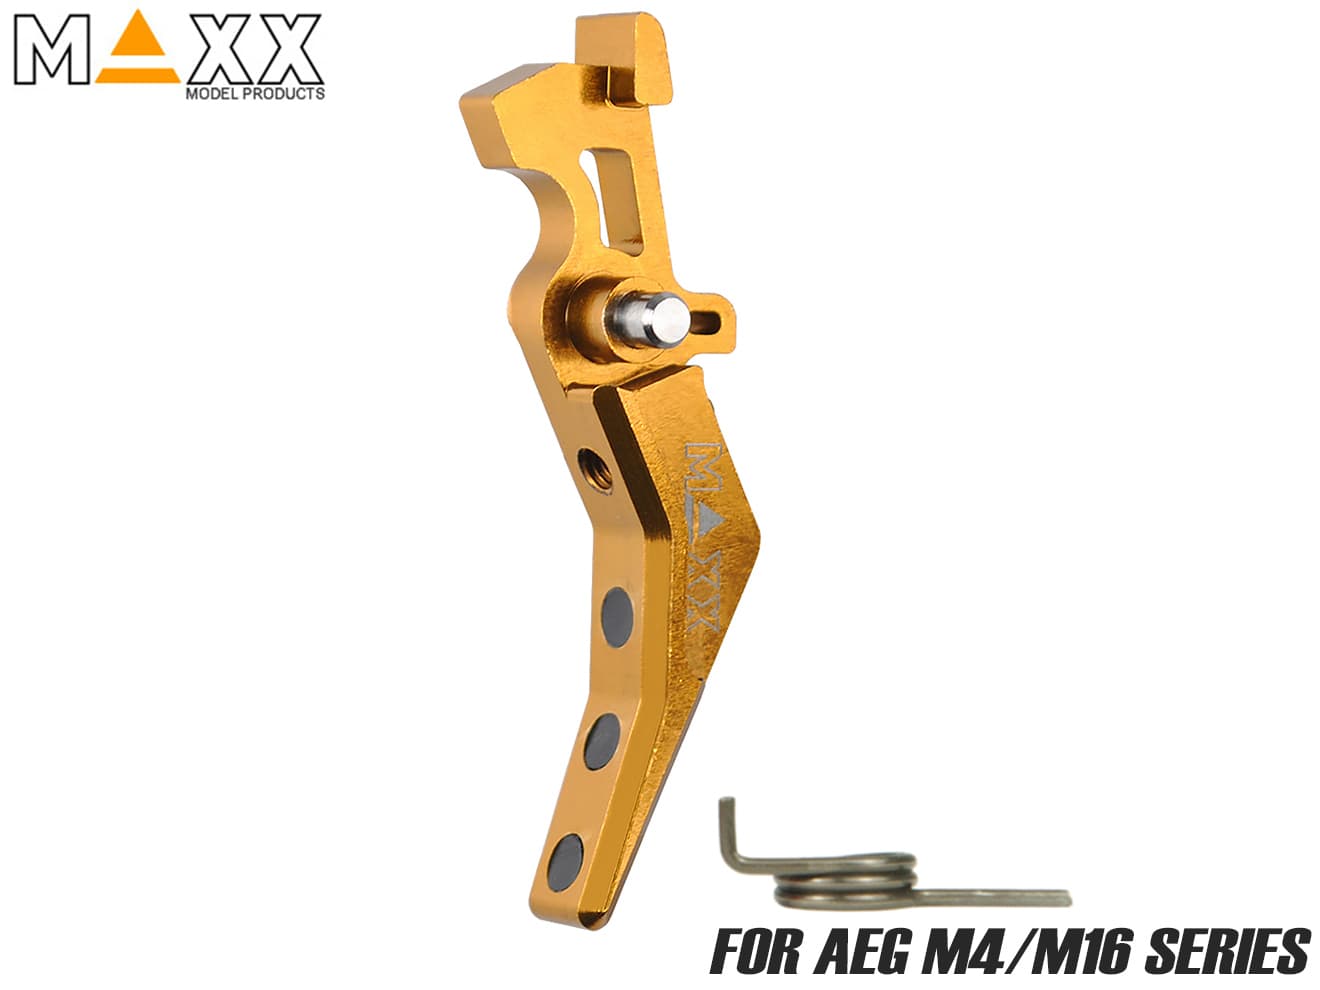 MAXX アルミCNC アドバンスド トリガー type B for AEG M4 [カラー：ブラック / レッド / ブルー / チタン / オレンジ / シルバー]